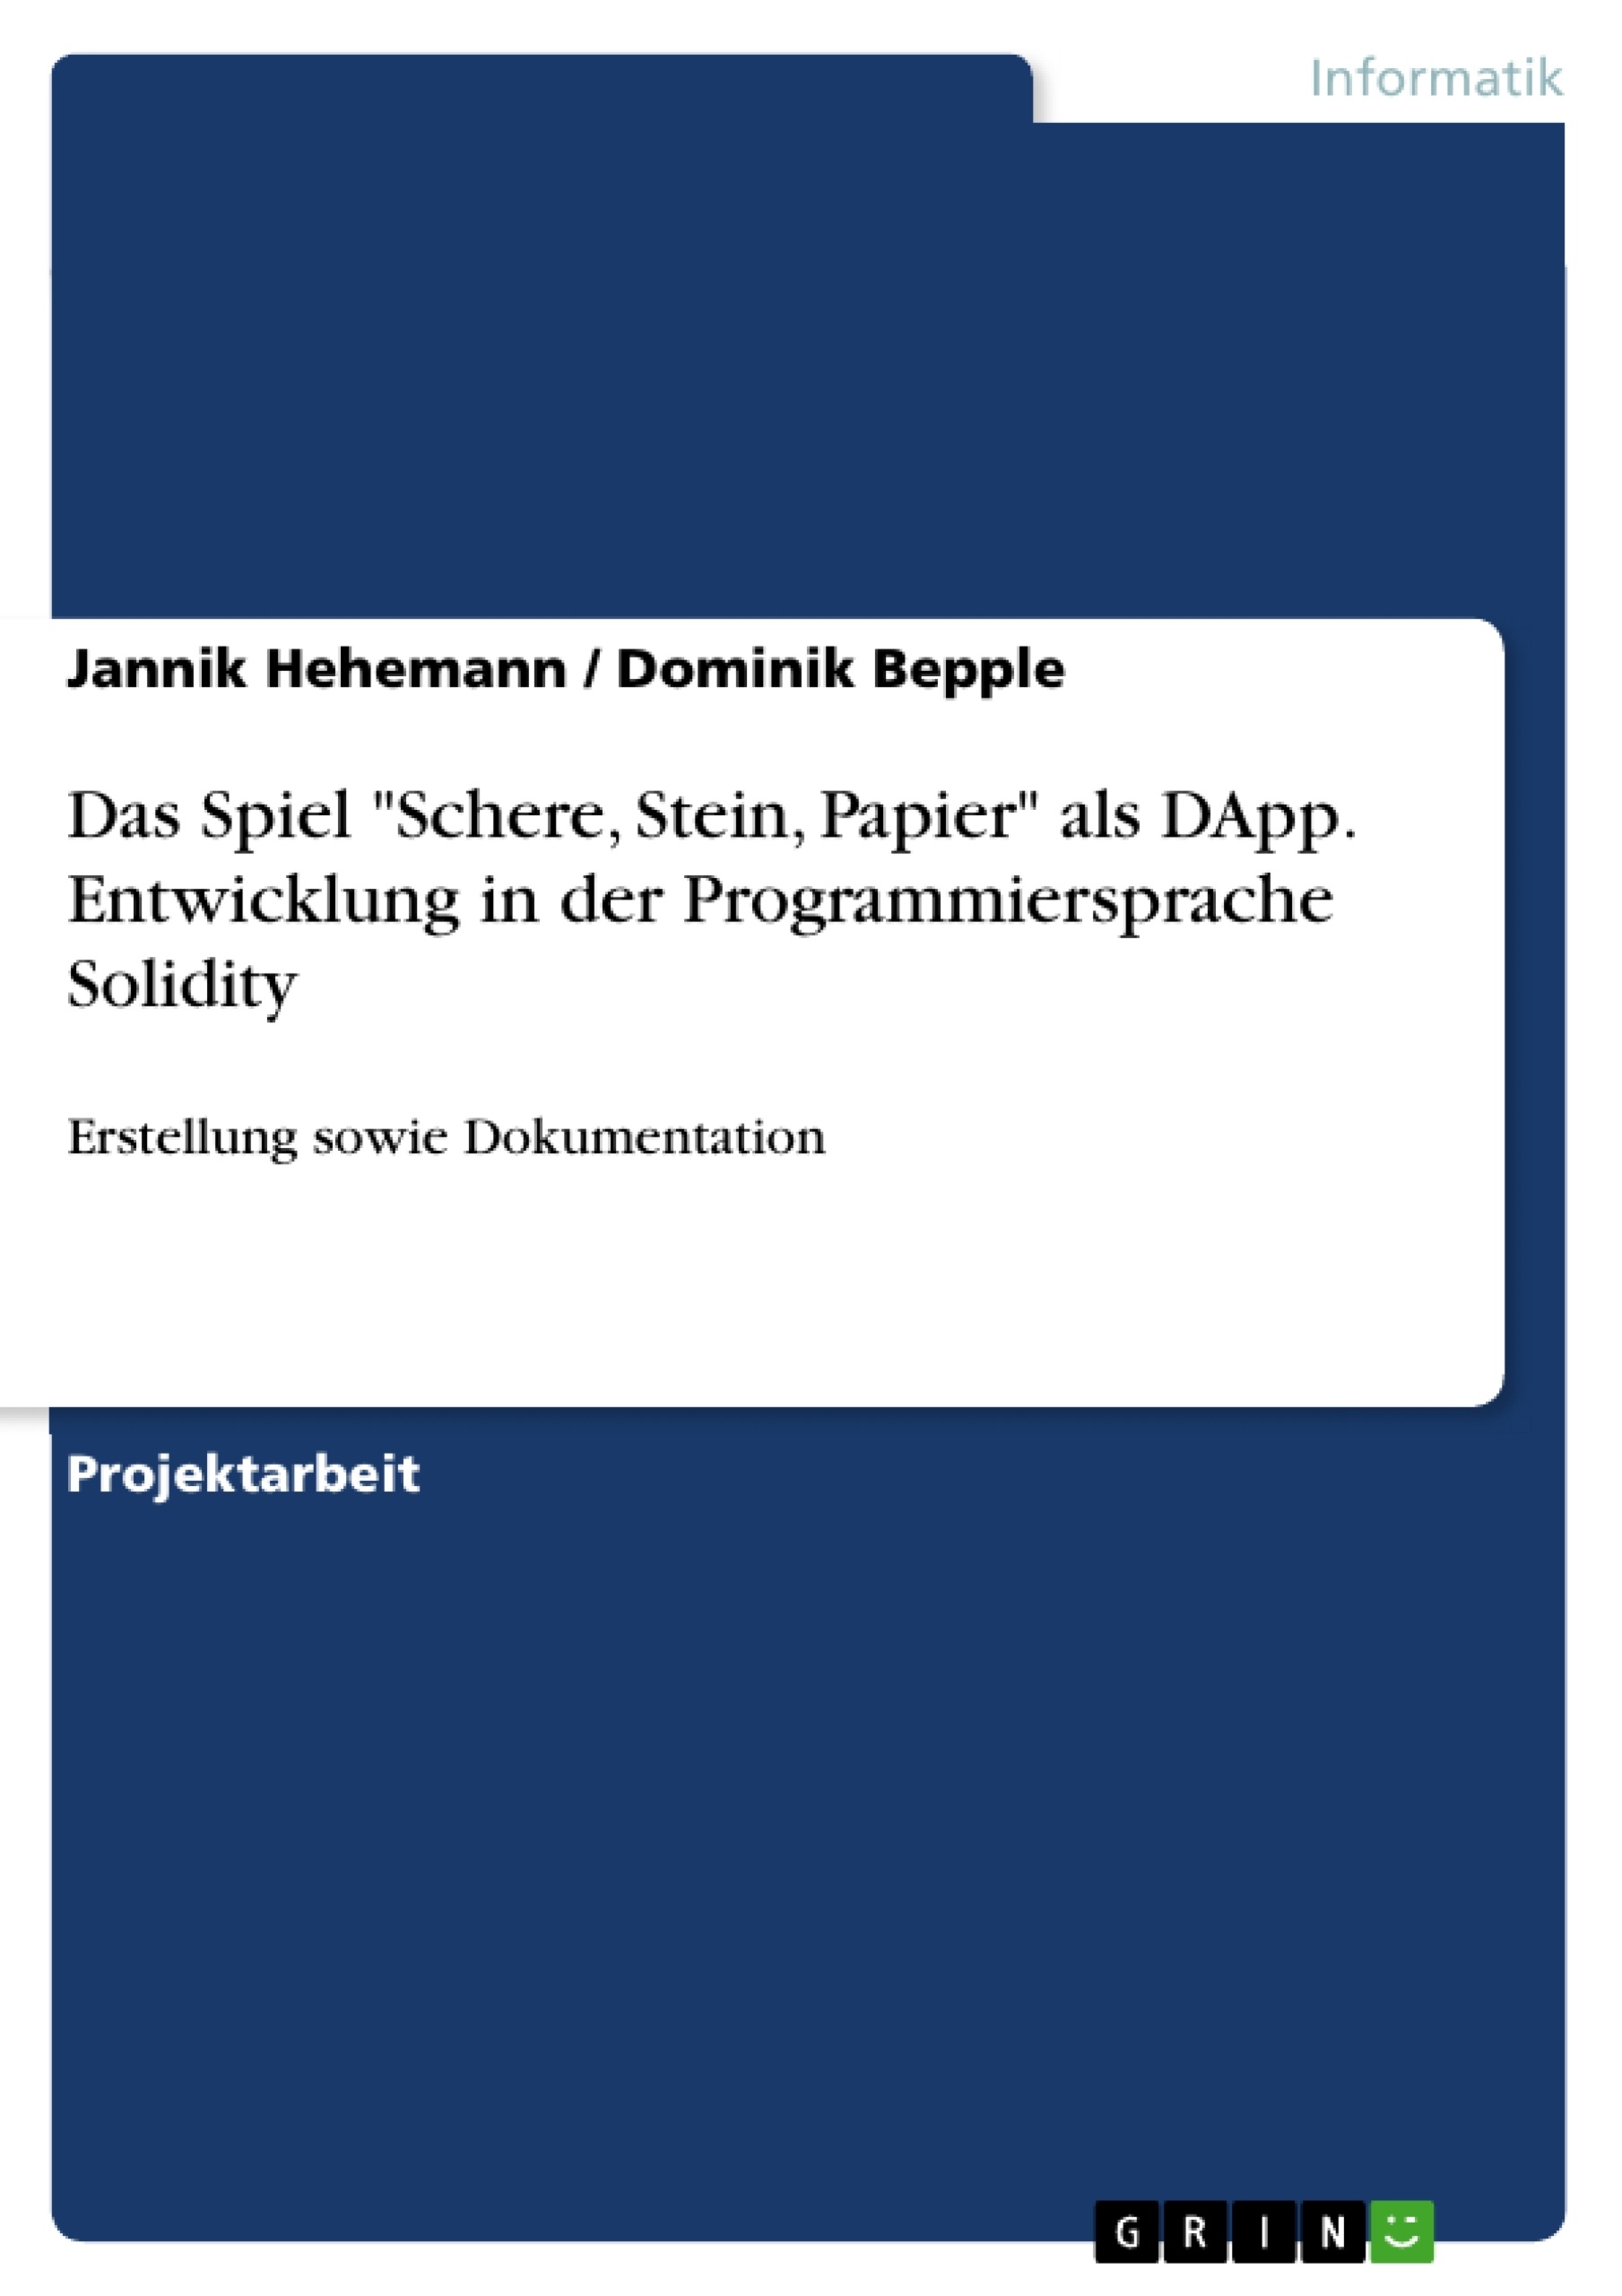 Title: Das Spiel "Schere, Stein, Papier" als DApp. Entwicklung in der Programmiersprache Solidity